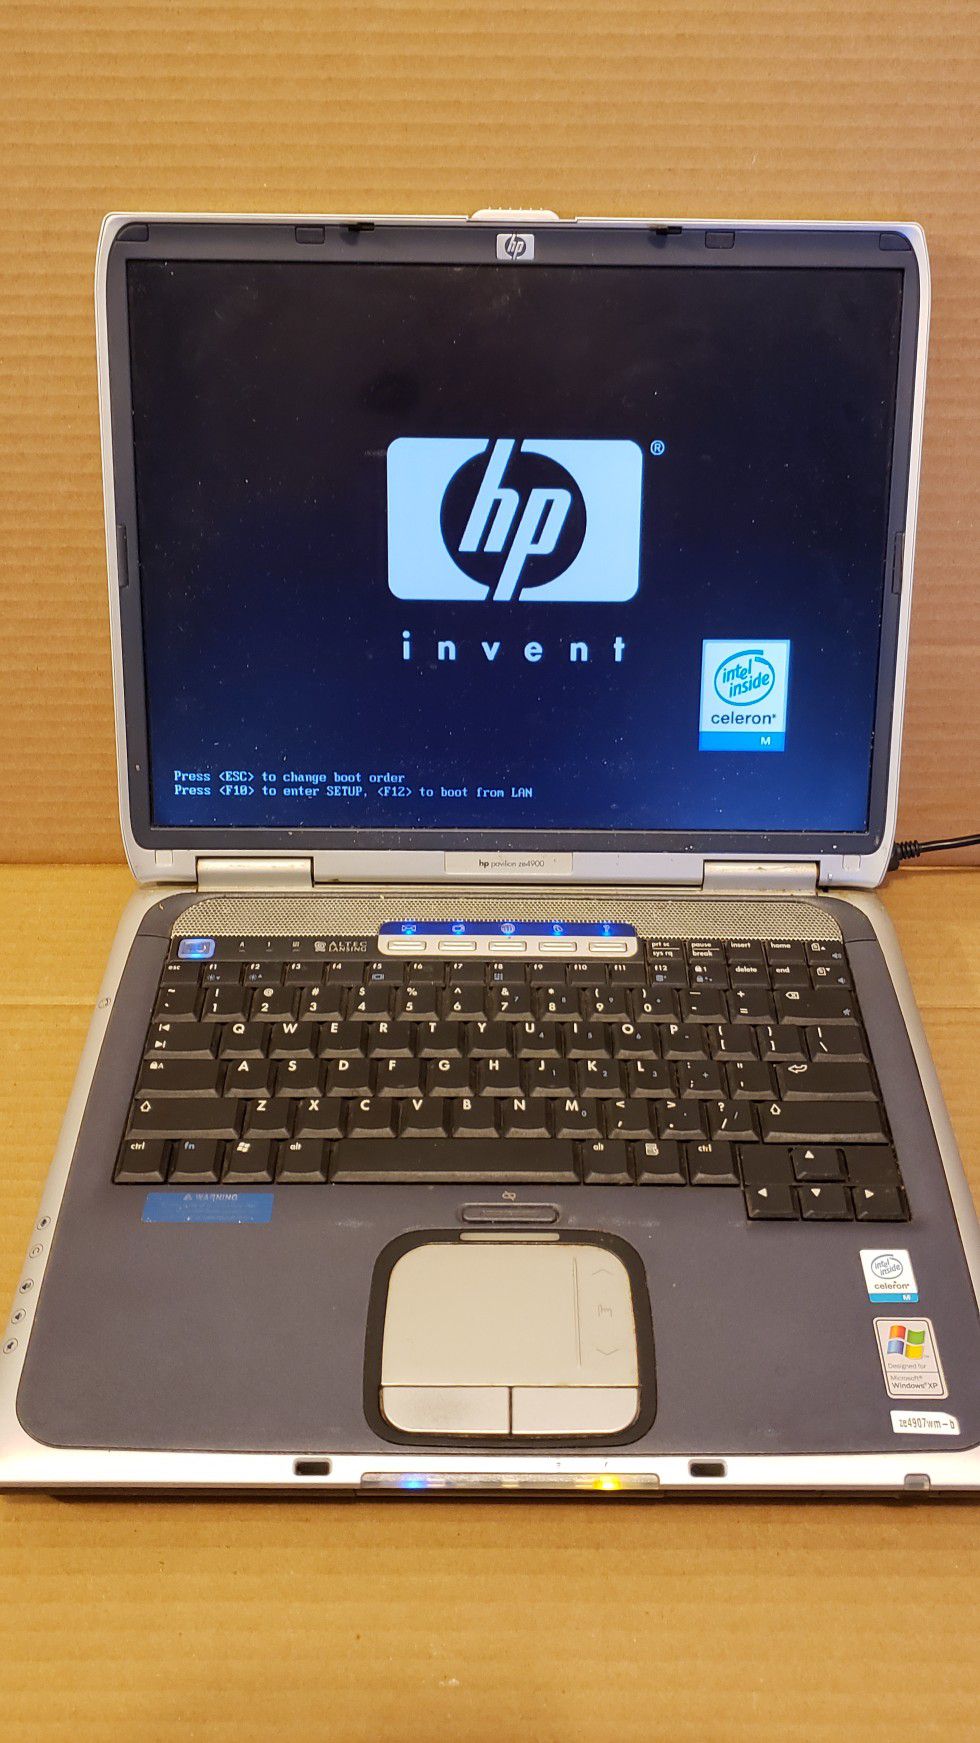 HP Pavilion ze4900 Windows XP Laptop Computer